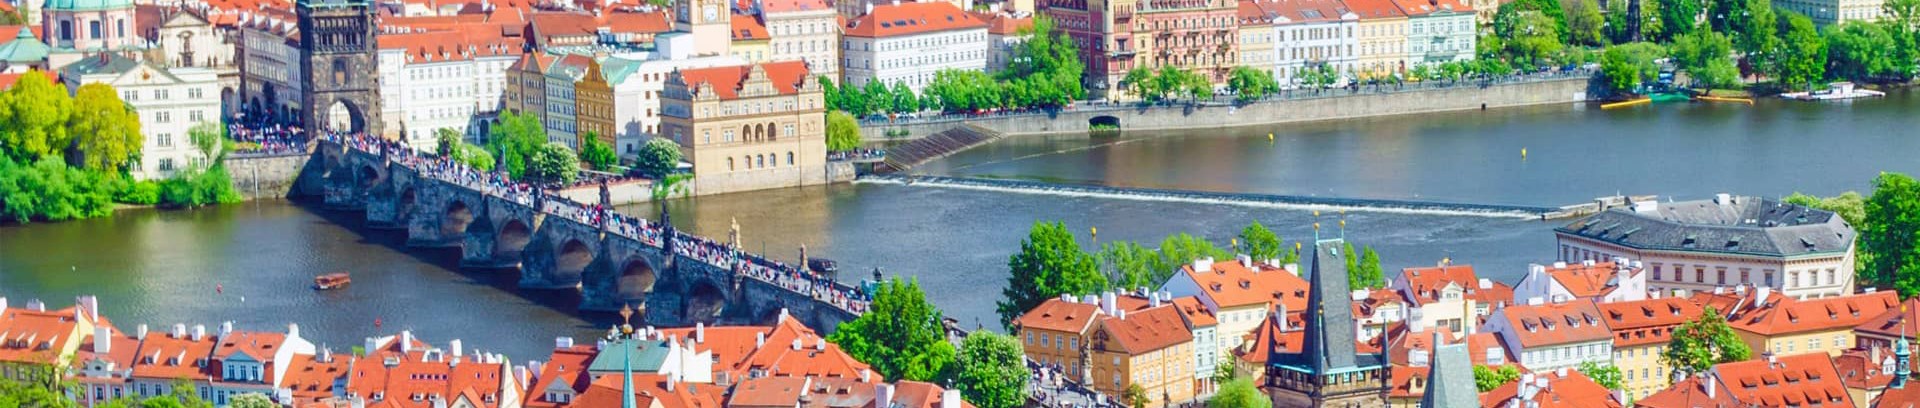 Tjekkiet by, sprogkursus i tjekkisk ved FOF Aarhus